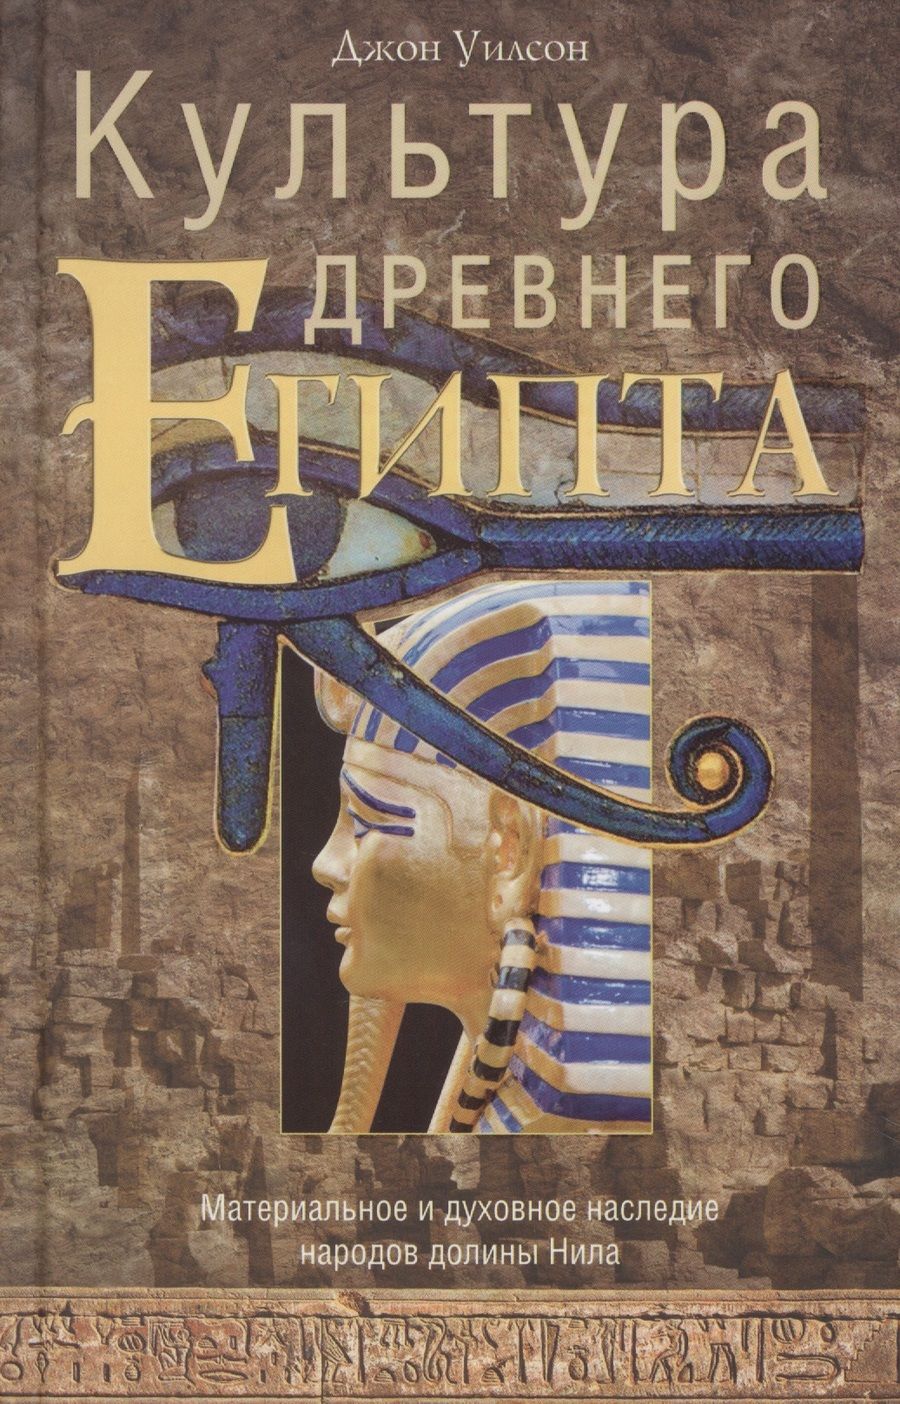 Обложка книги "Джон А.: Культура Древнего Египта. Материальное и духовное наследие народов долины Нила"